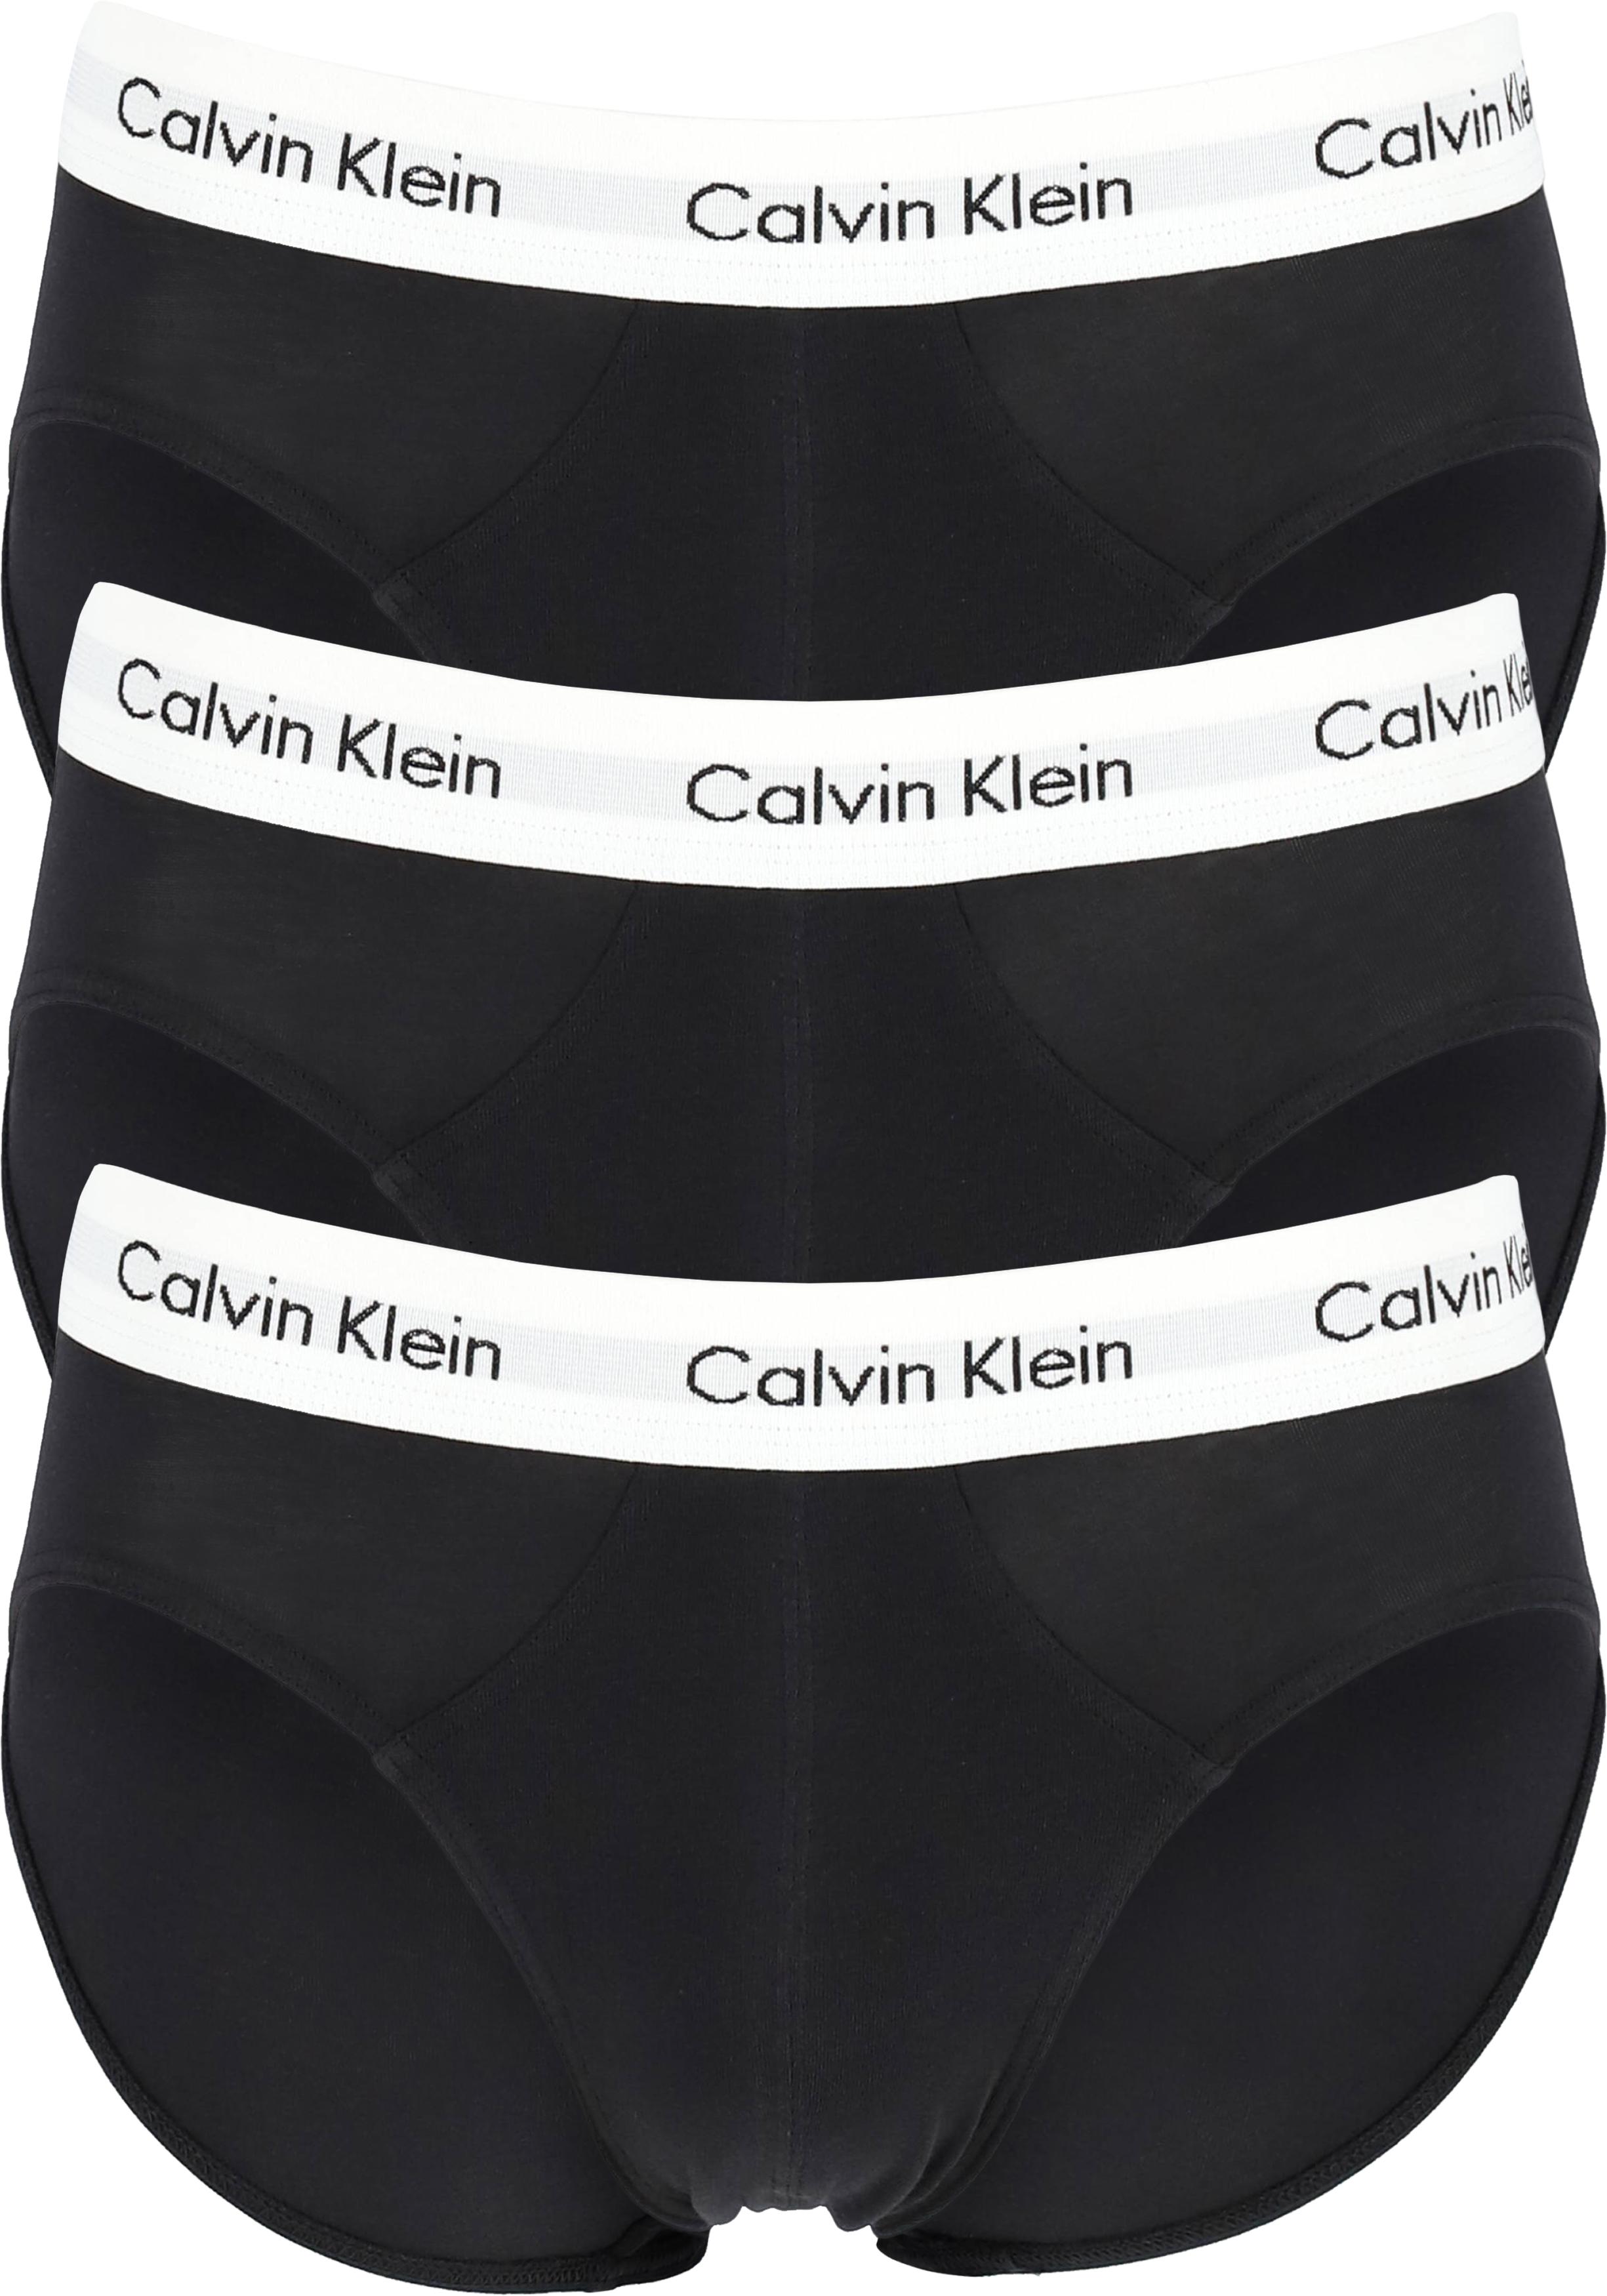 Calvin Klein hipster brief (3-pack), heren slips, met band - Shop de nieuwste voorjaarsmode